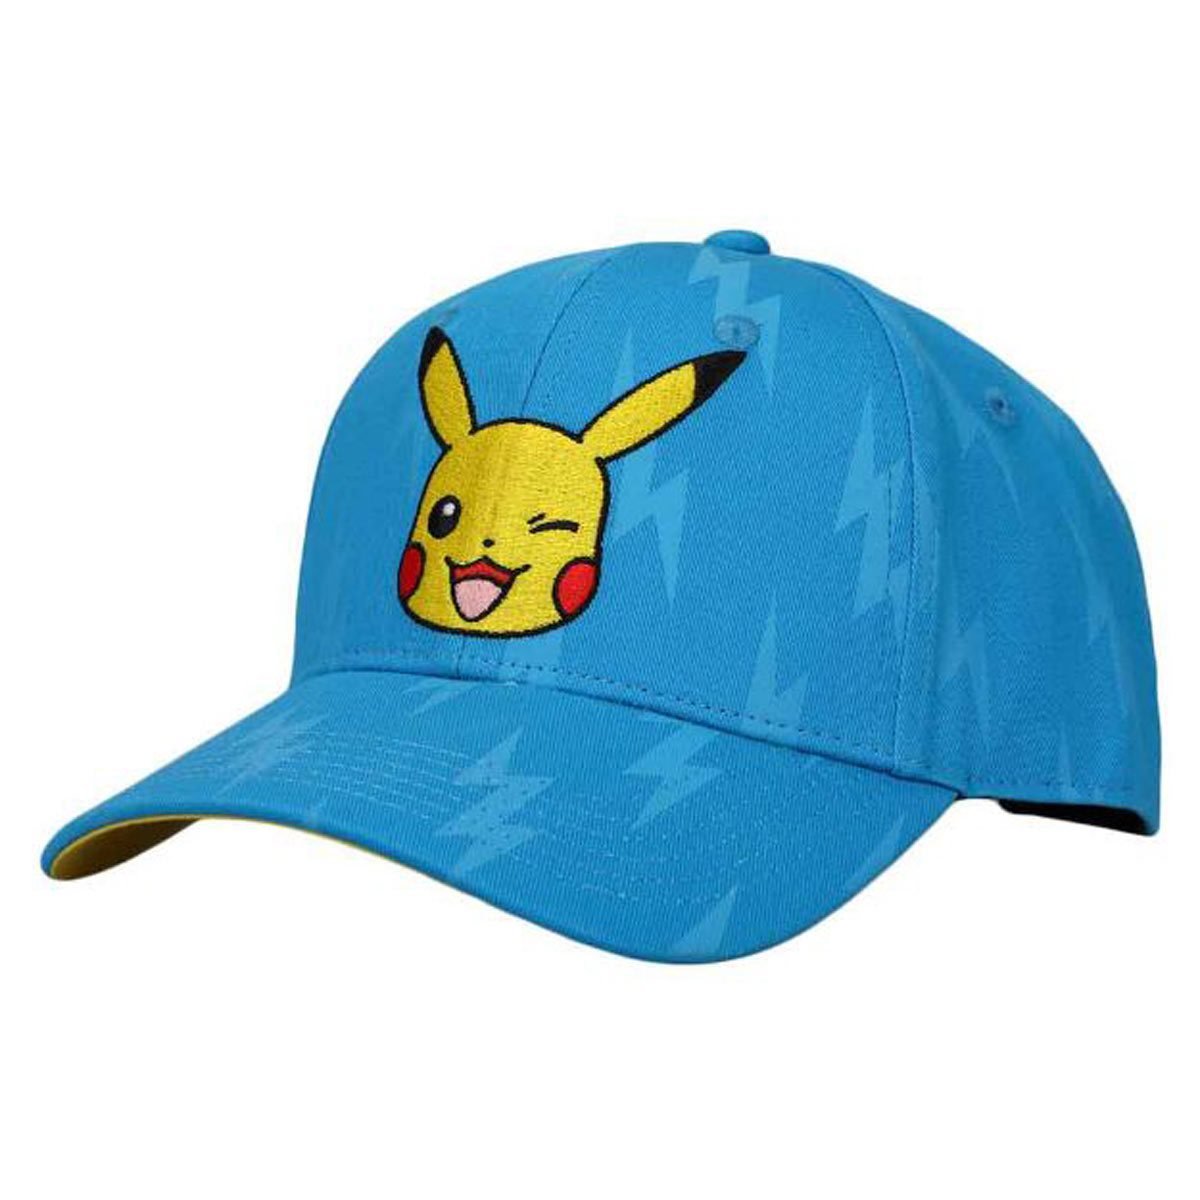 Bioworld Merchandising. Pokemon Jigglypuff Chenille Patch Hat